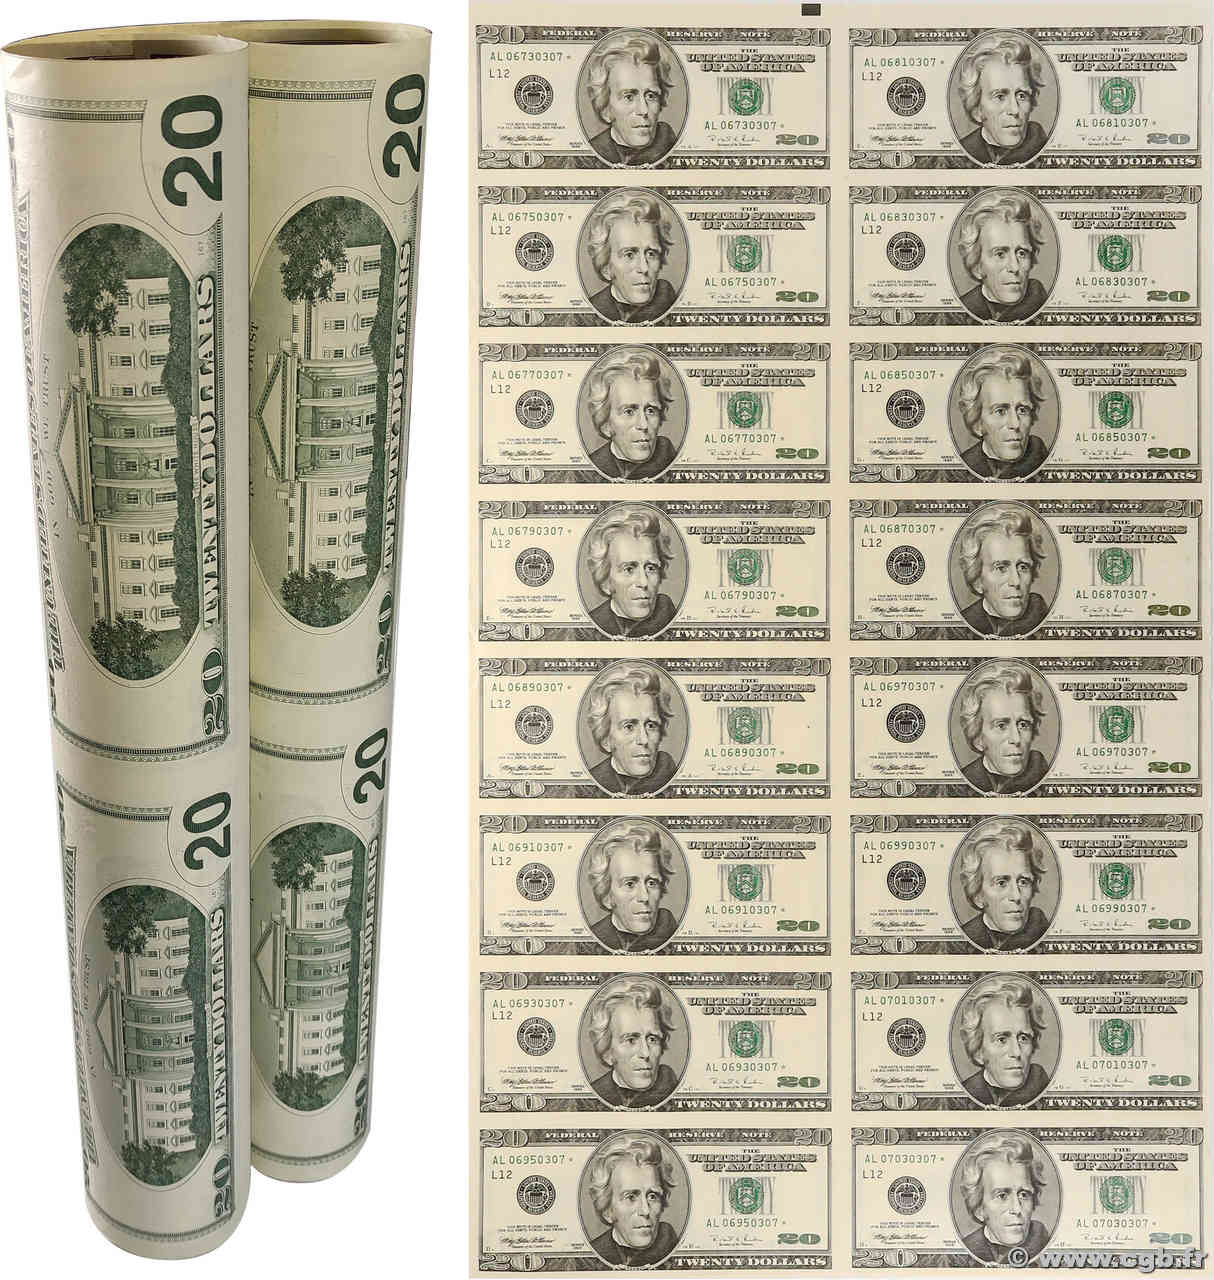 20 Dollars Planche VEREINIGTE STAATEN VON AMERIKA San Francisco 1996 P.501* ST